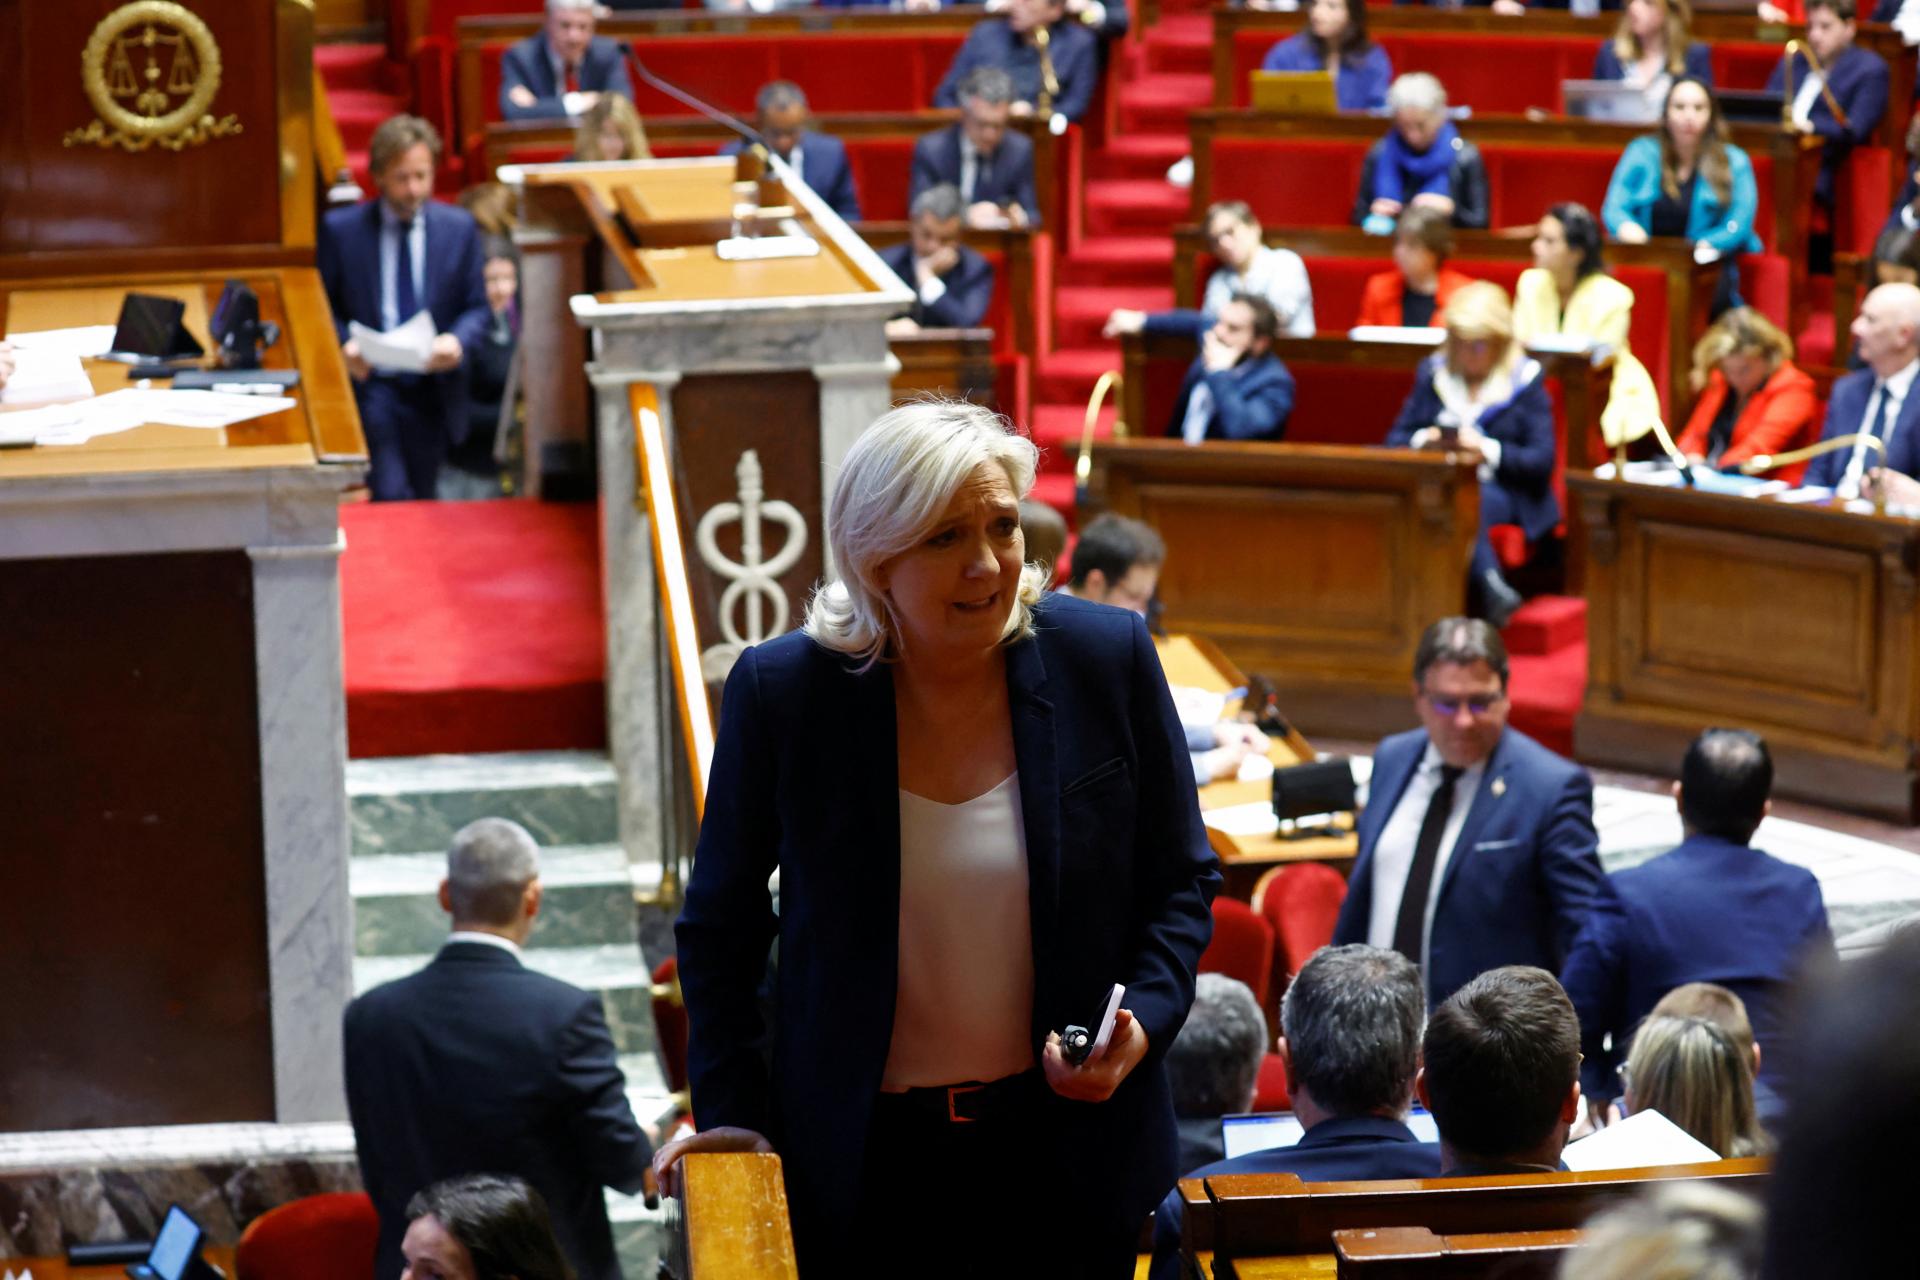 Le Penová by v prezidentských voľbách porazila Macrona, ukázal prieskum. Francúzsko čelí protestom